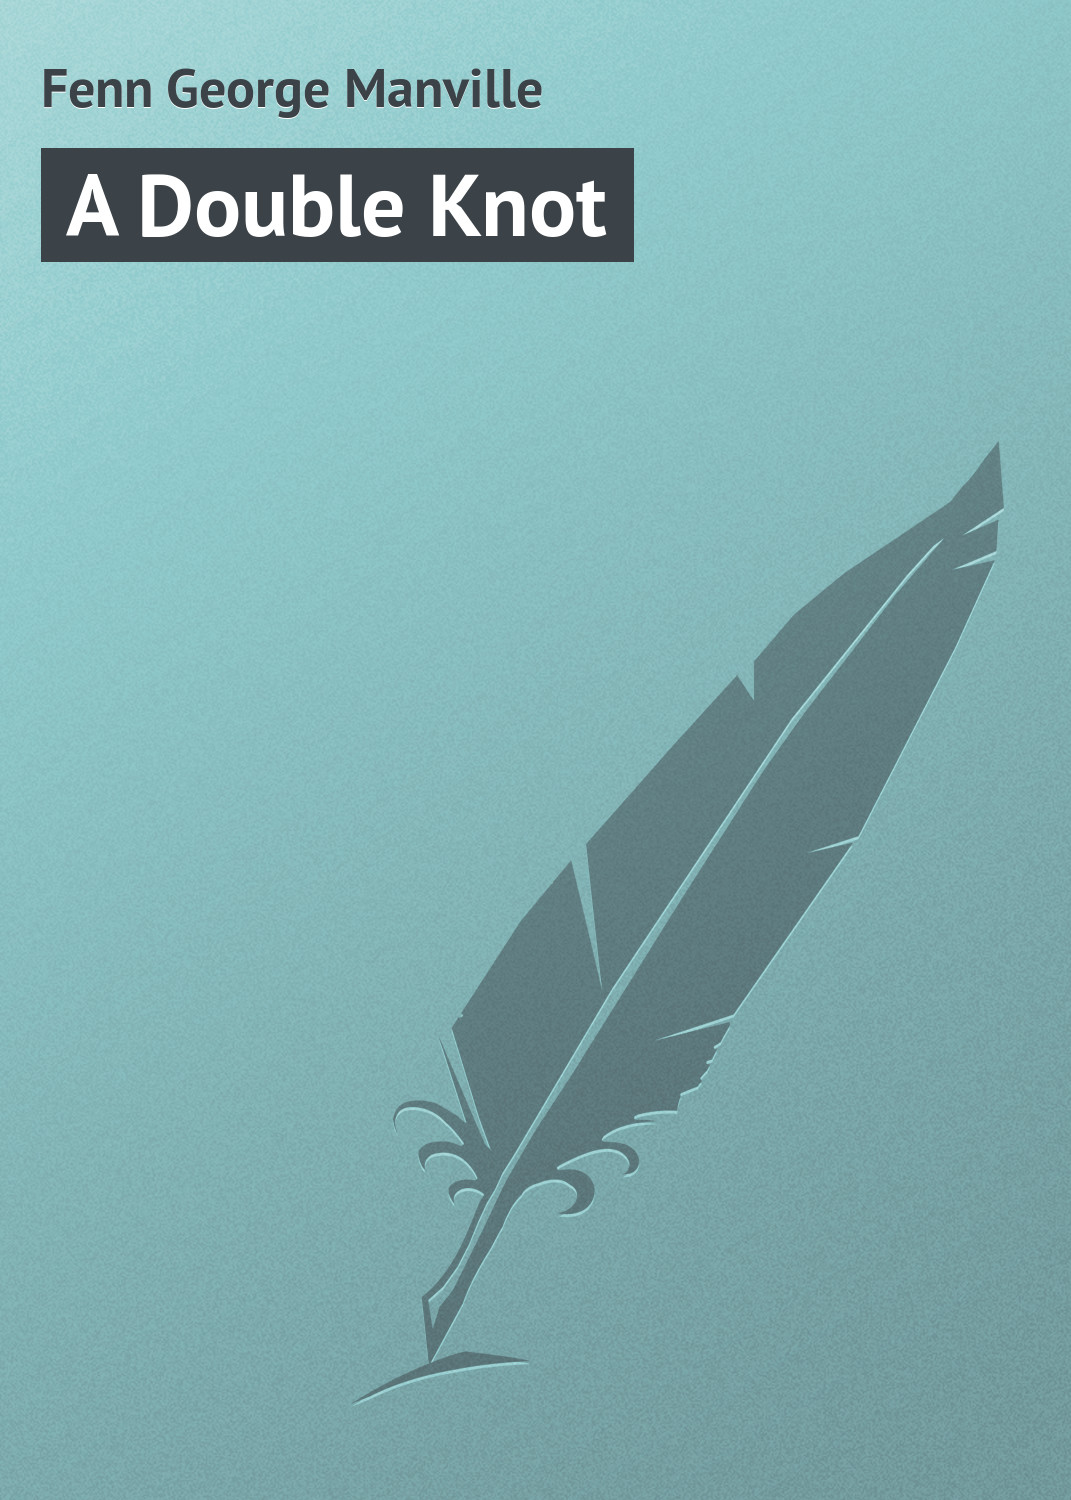 Книга A Double Knot из серии , созданная George Fenn, может относится к жанру Зарубежная классика. Стоимость электронной книги A Double Knot с идентификатором 23157291 составляет 5.99 руб.